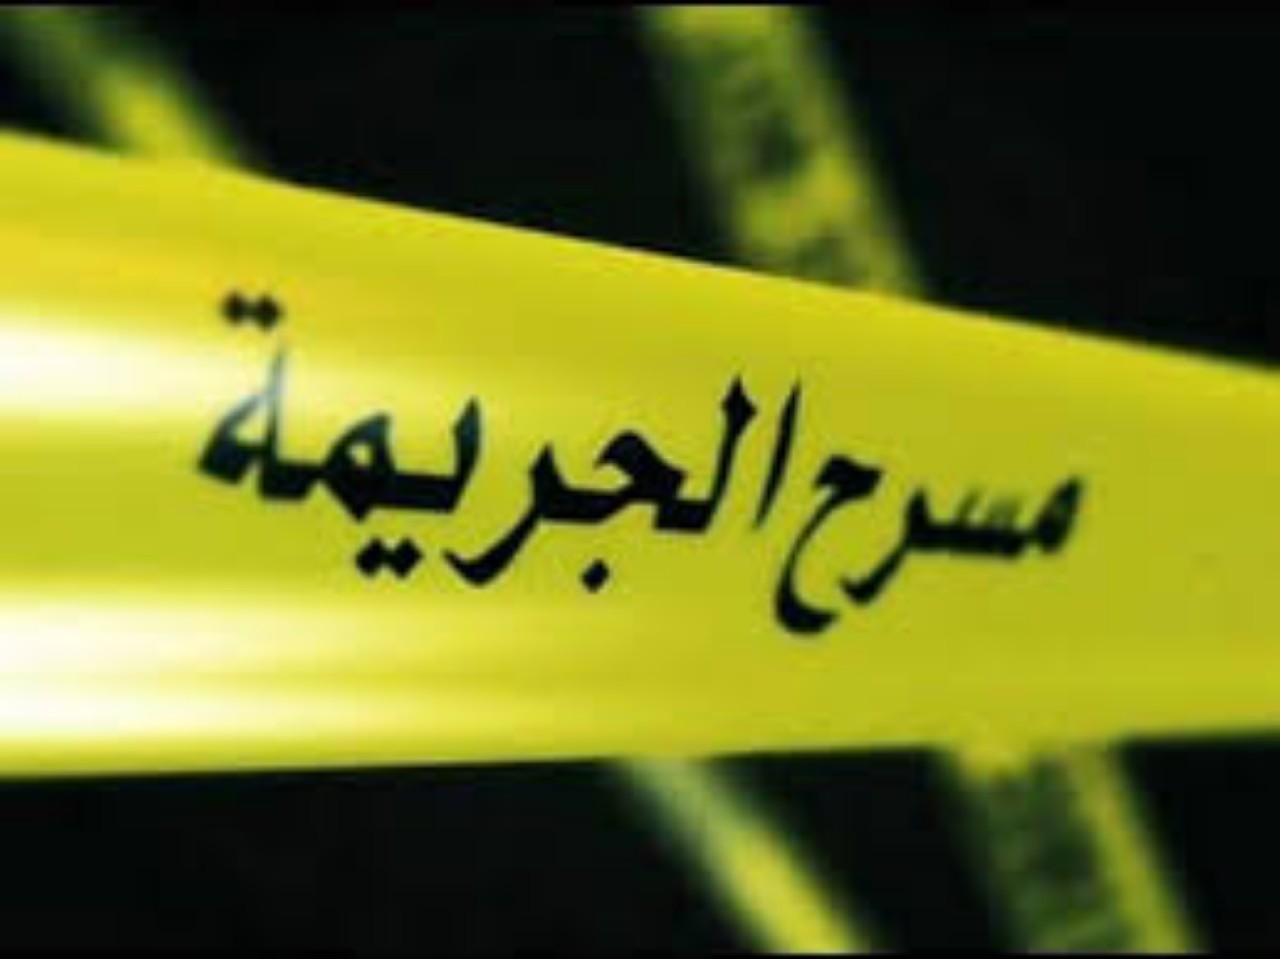 جريمة مروعة راح ضحيتها شاب بمدينة الخميسات